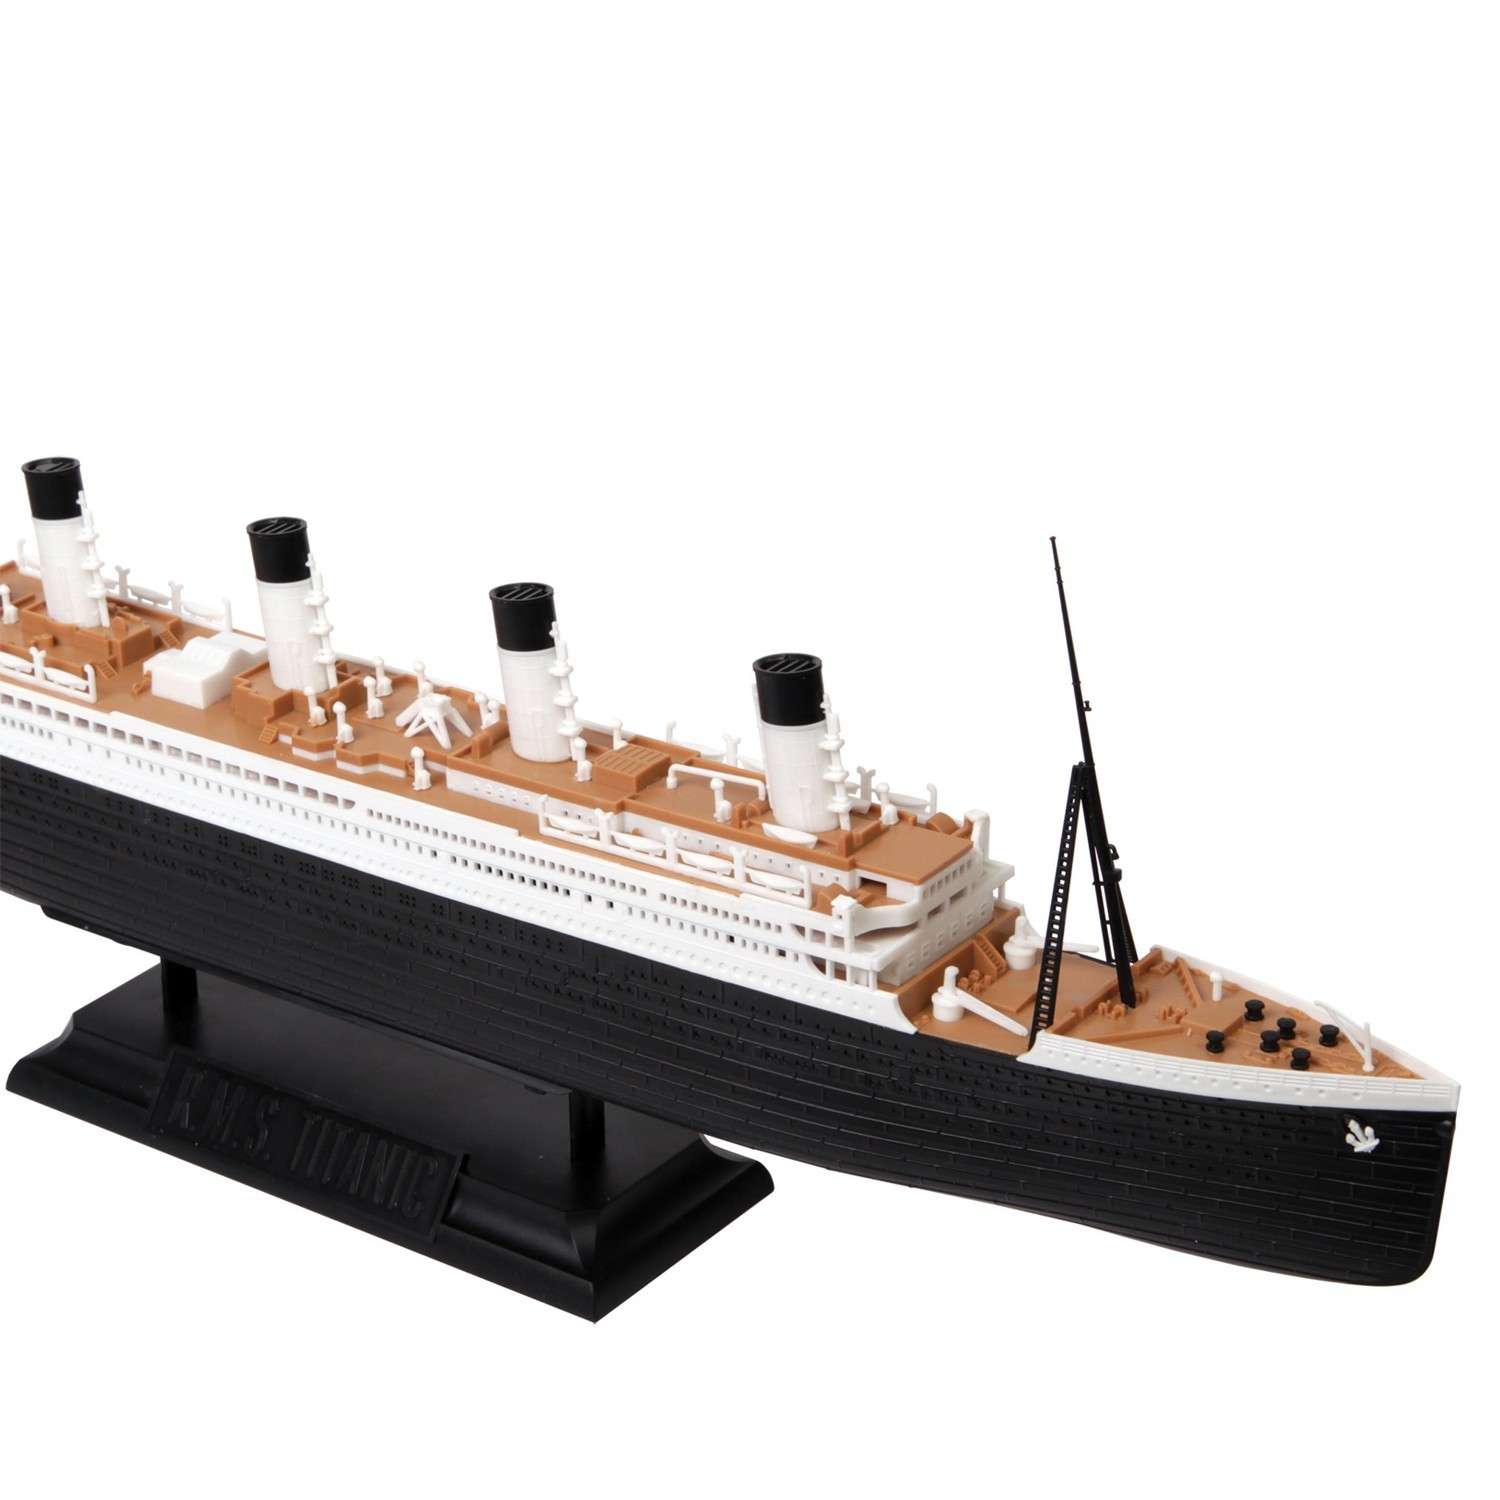 Сборная модель Звезда Пассажирский лайнер Титаник 9059 - фото 2